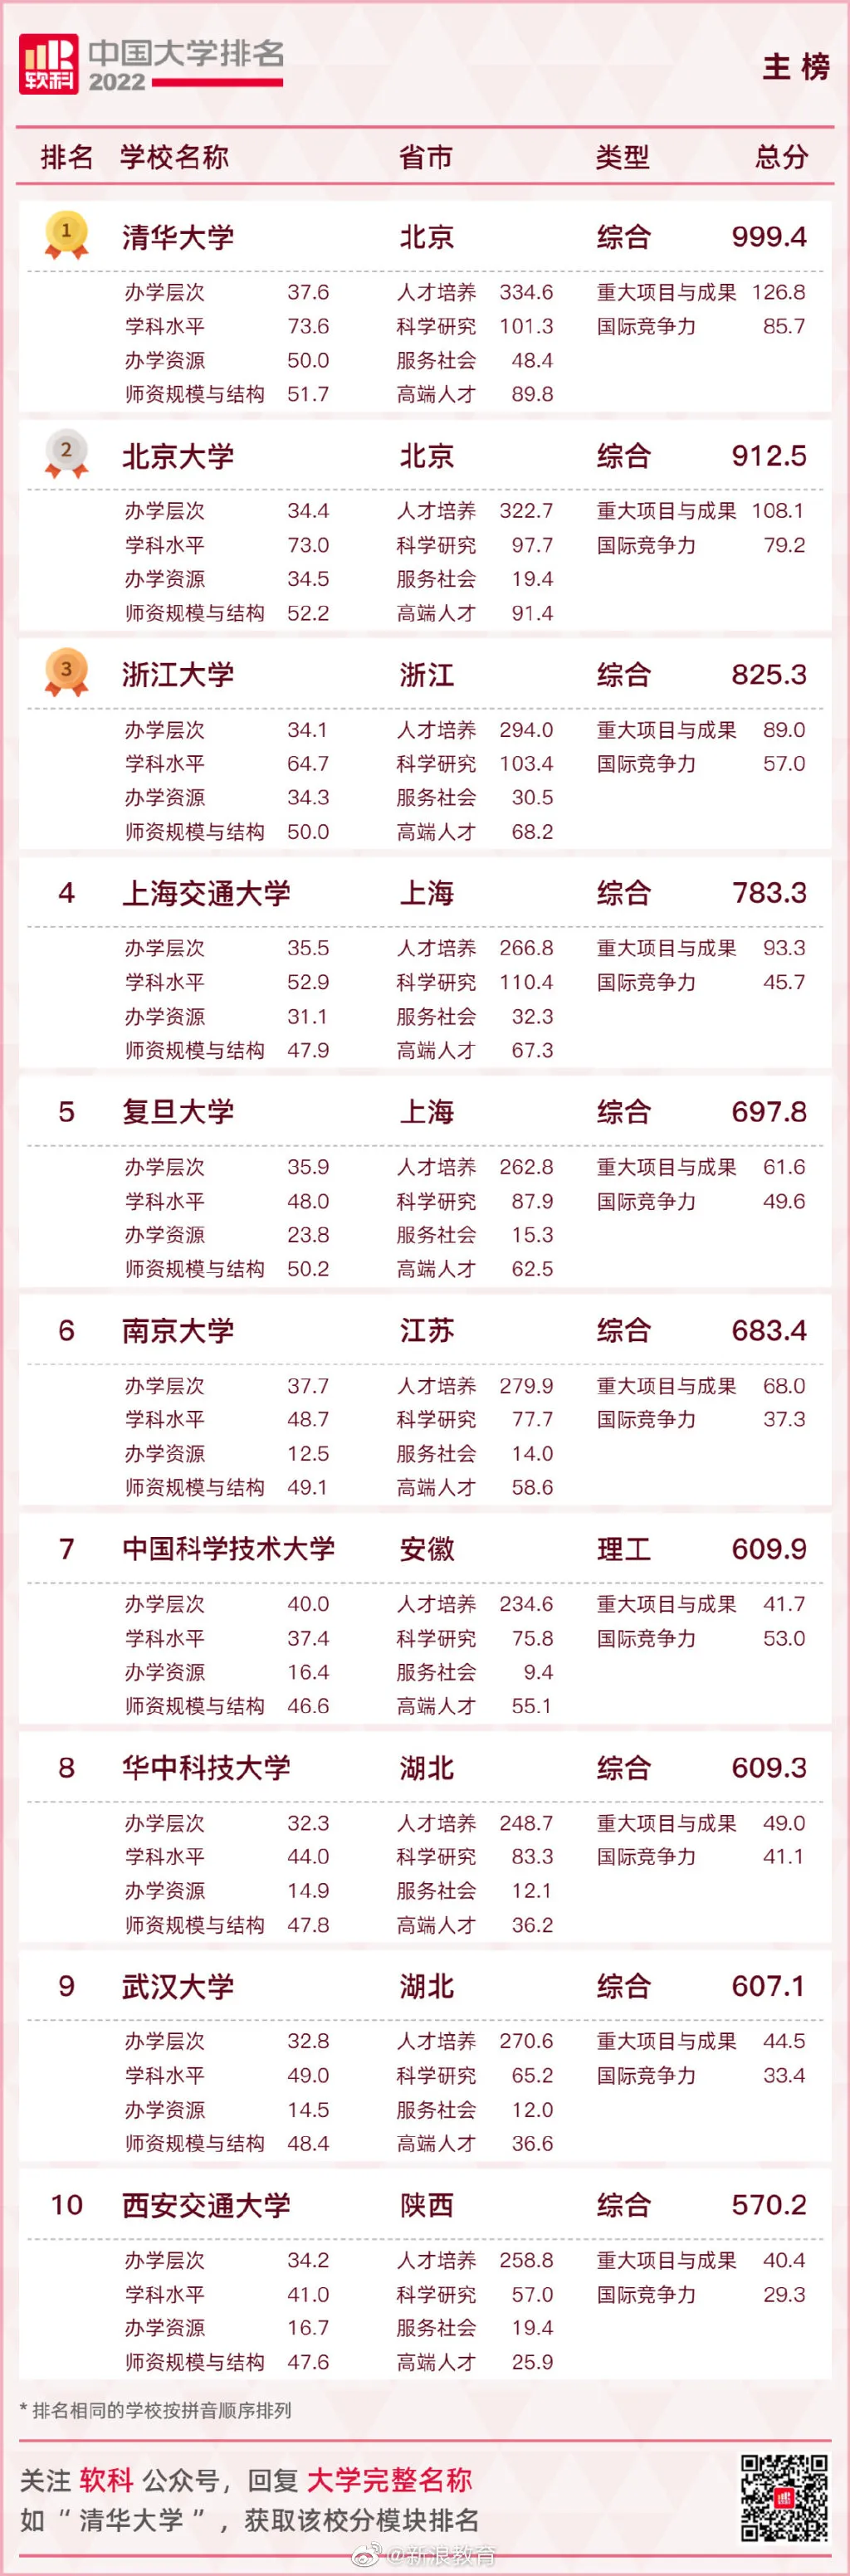 2022软科中国大学排名 2022中国大学排名